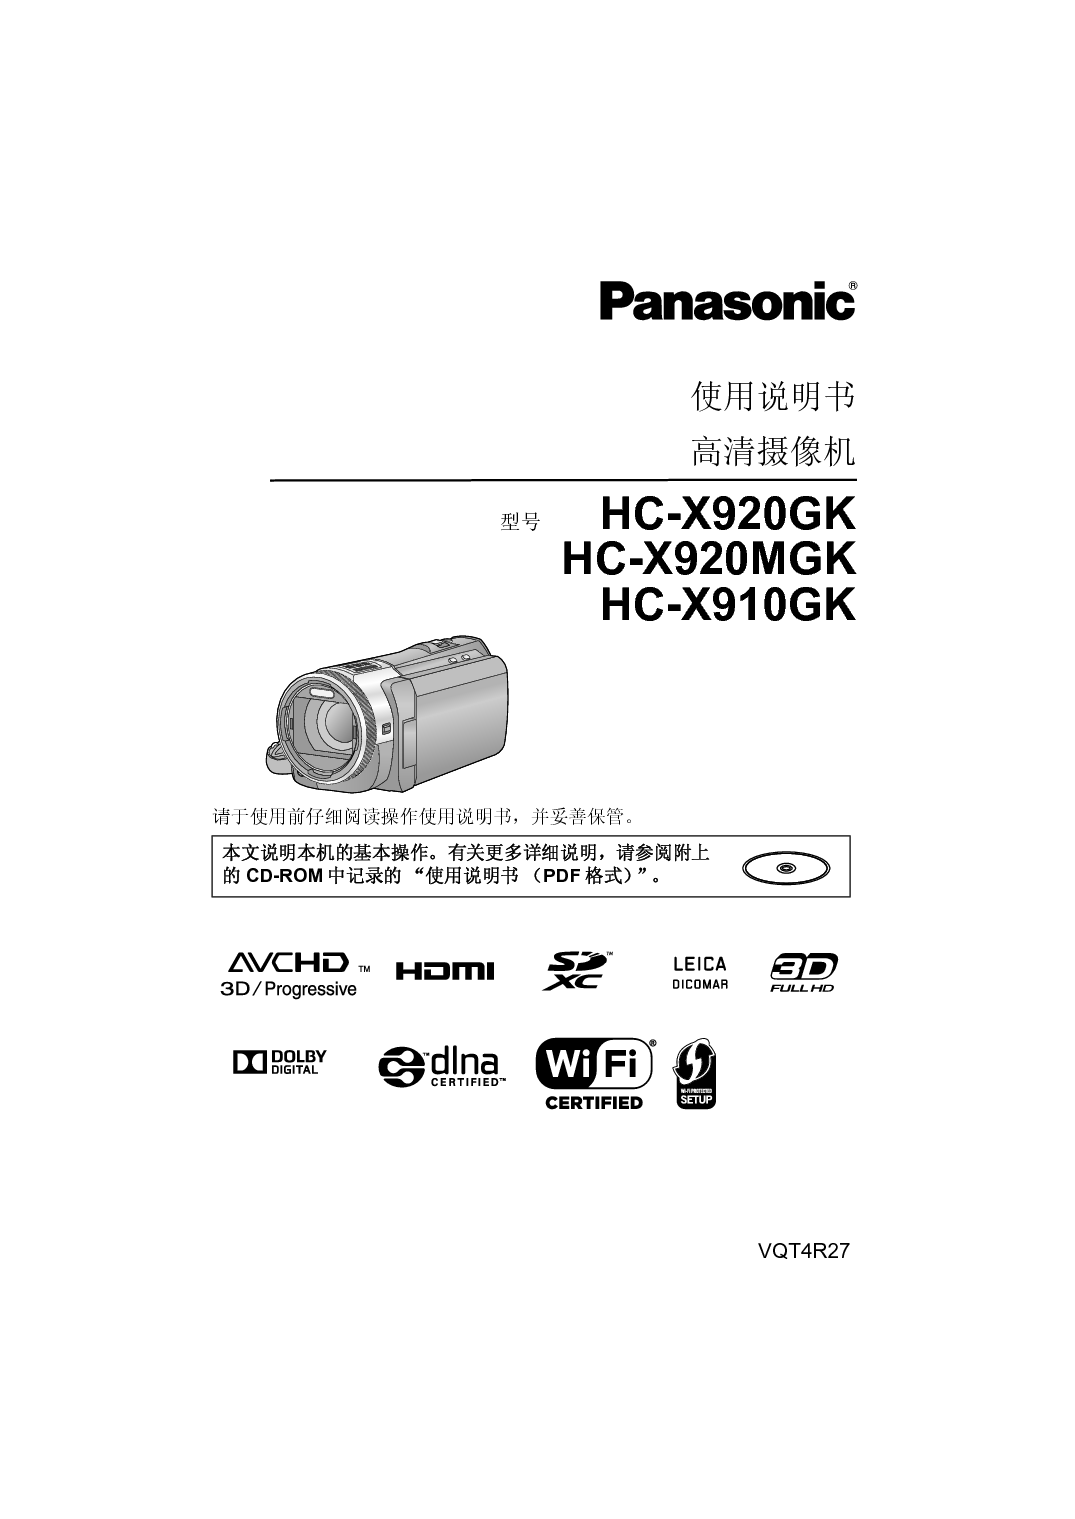 松下 Panasonic HC-X910GK 说明书 封面